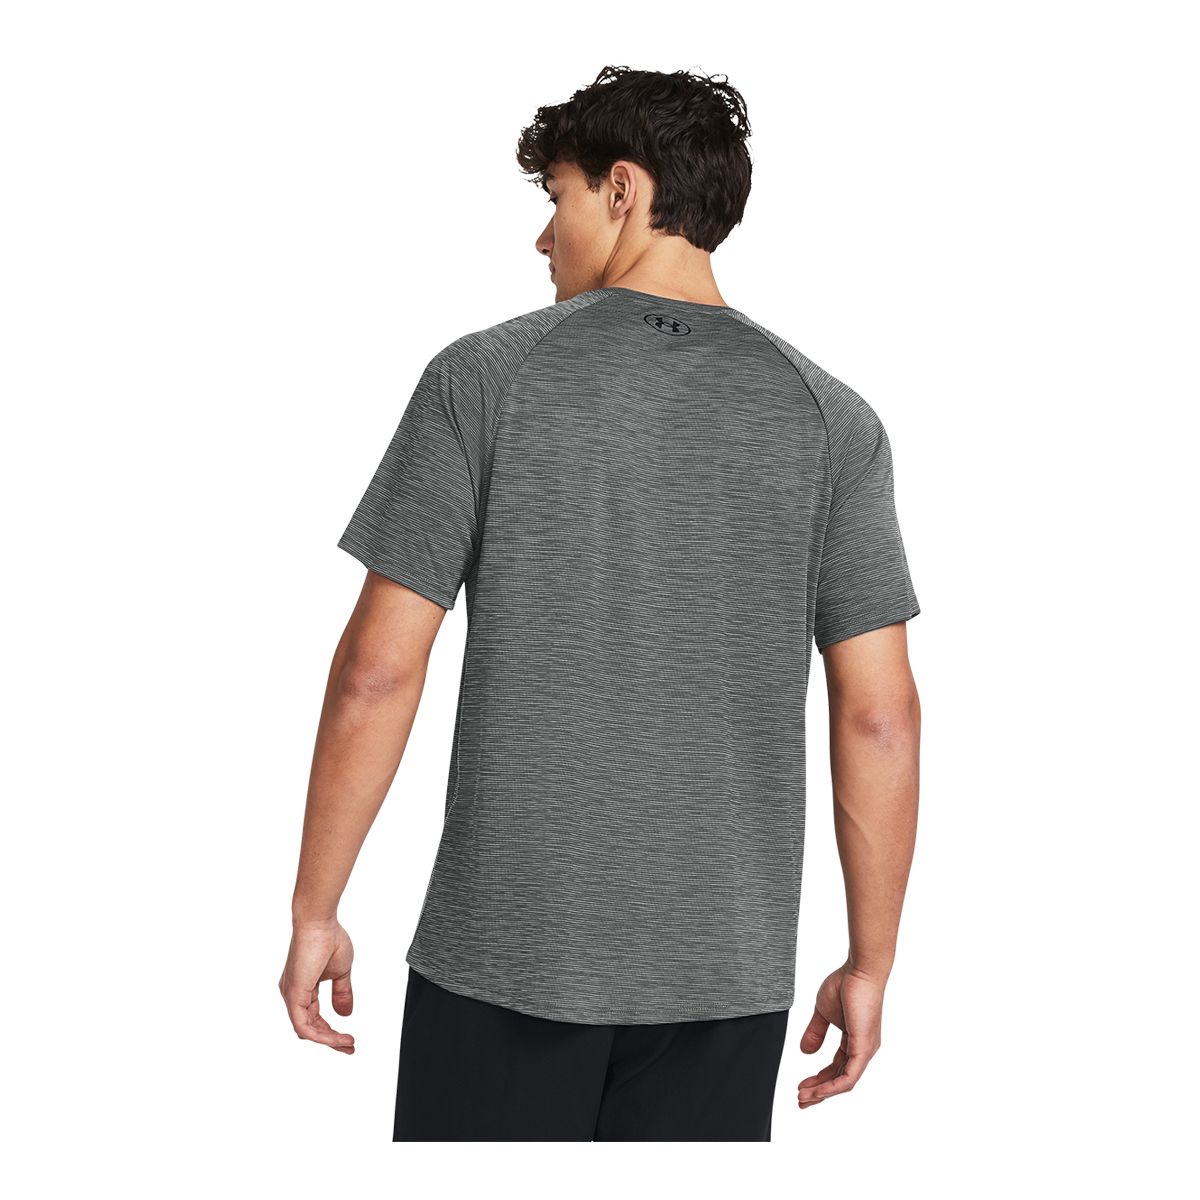 Under Armour Men's Tech™ Textured T Shirt